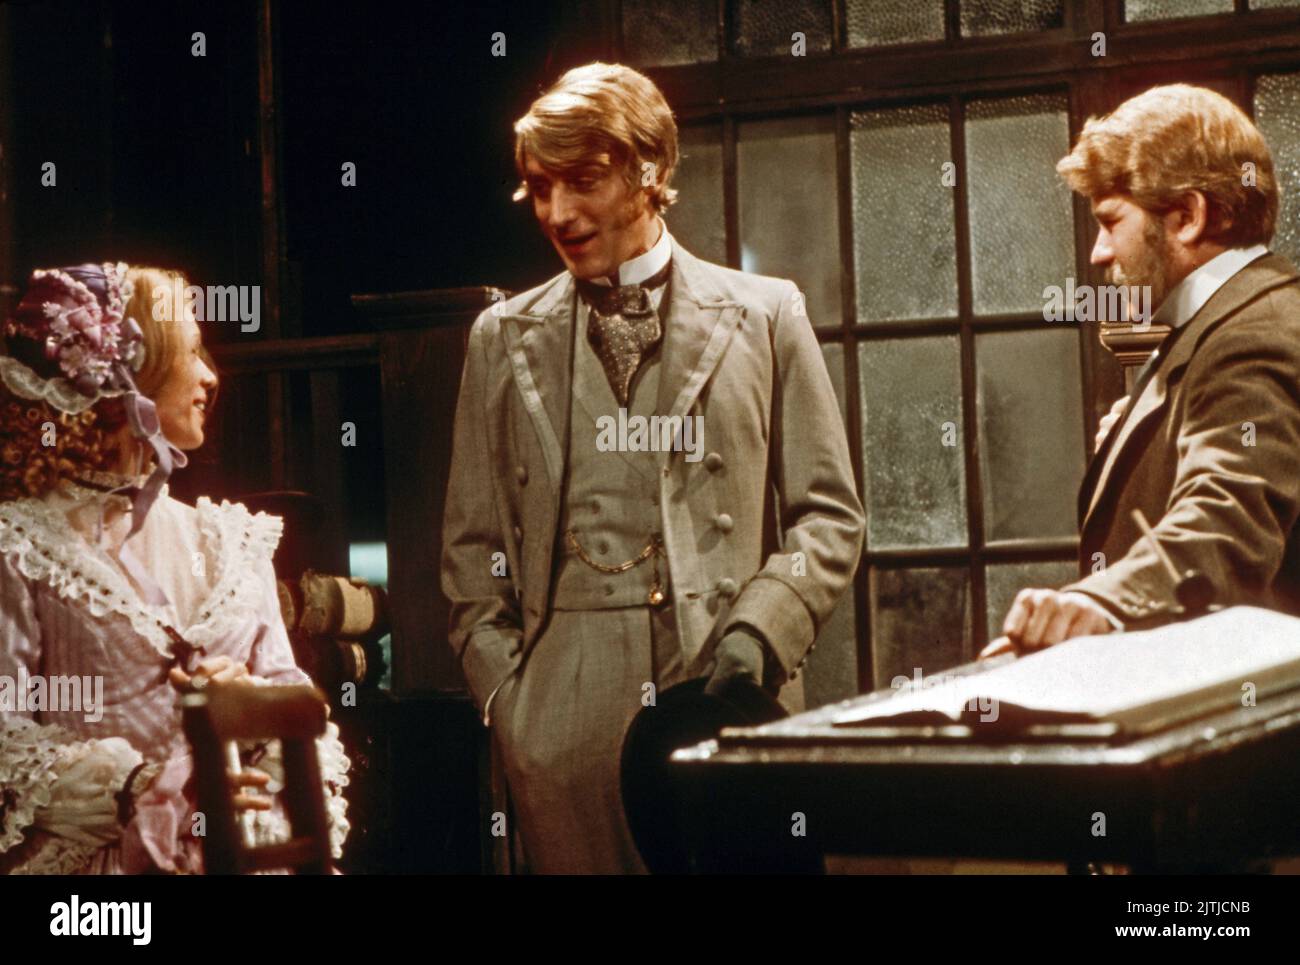 La línea Onedin, aka: Die Onedin-Linie, Großbritannien Fernsehserie, 1971 - 1980, Darsteller: Jessica Benton, Philip Bond, Brian Rawlinson Foto de stock